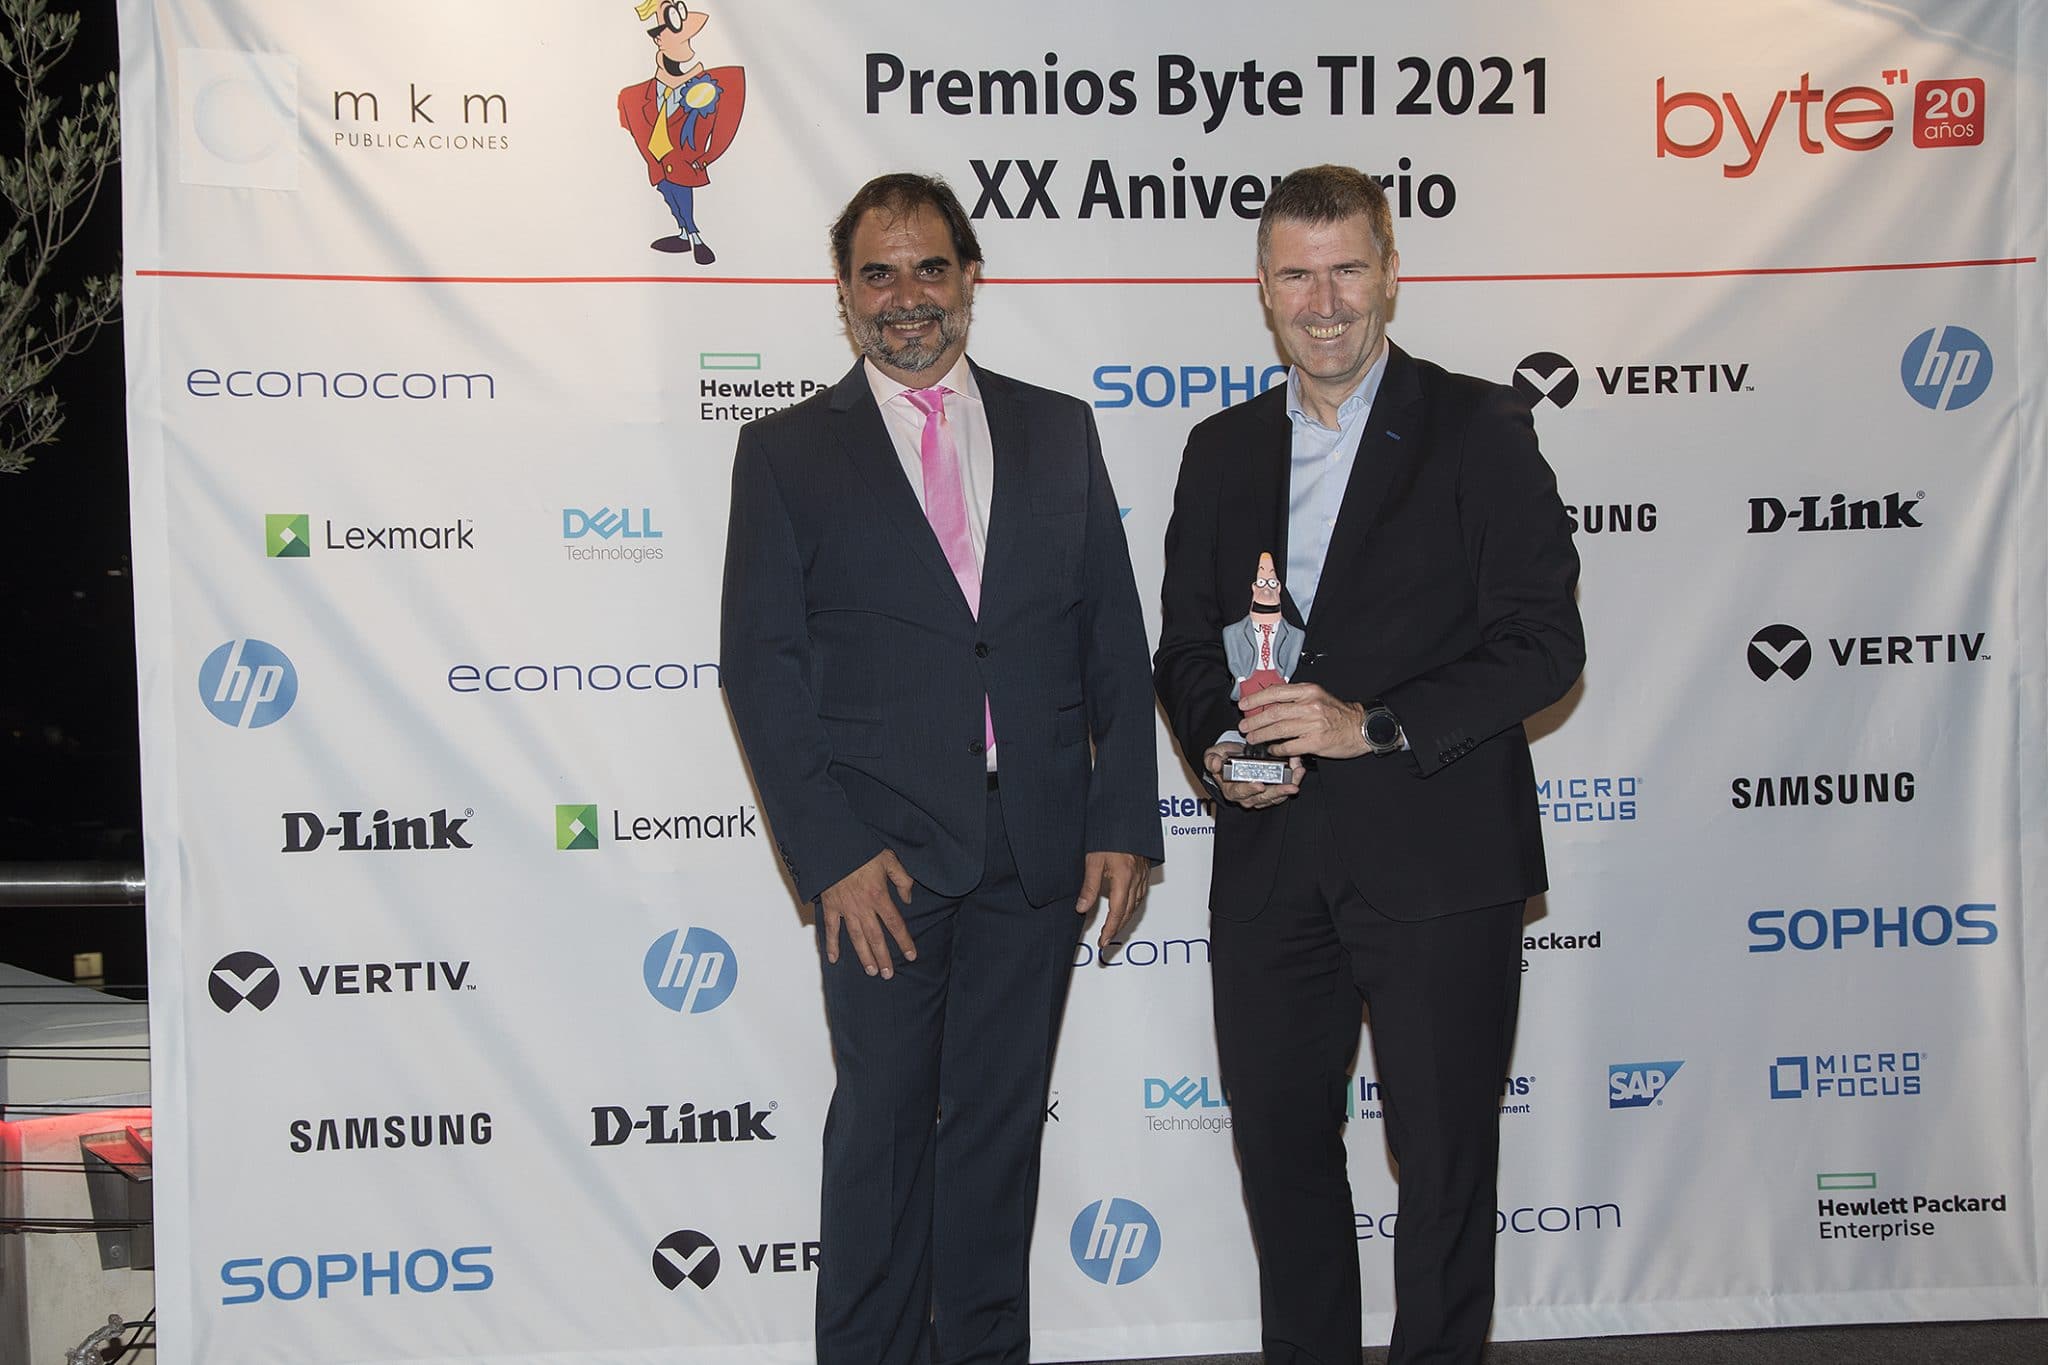 Carlos de la Iglesia, director de comunicación de Microsoft, recogiendo su premio al Mejor Director de Comunicación de manos de Manuel Navarro, director de Byte TI.